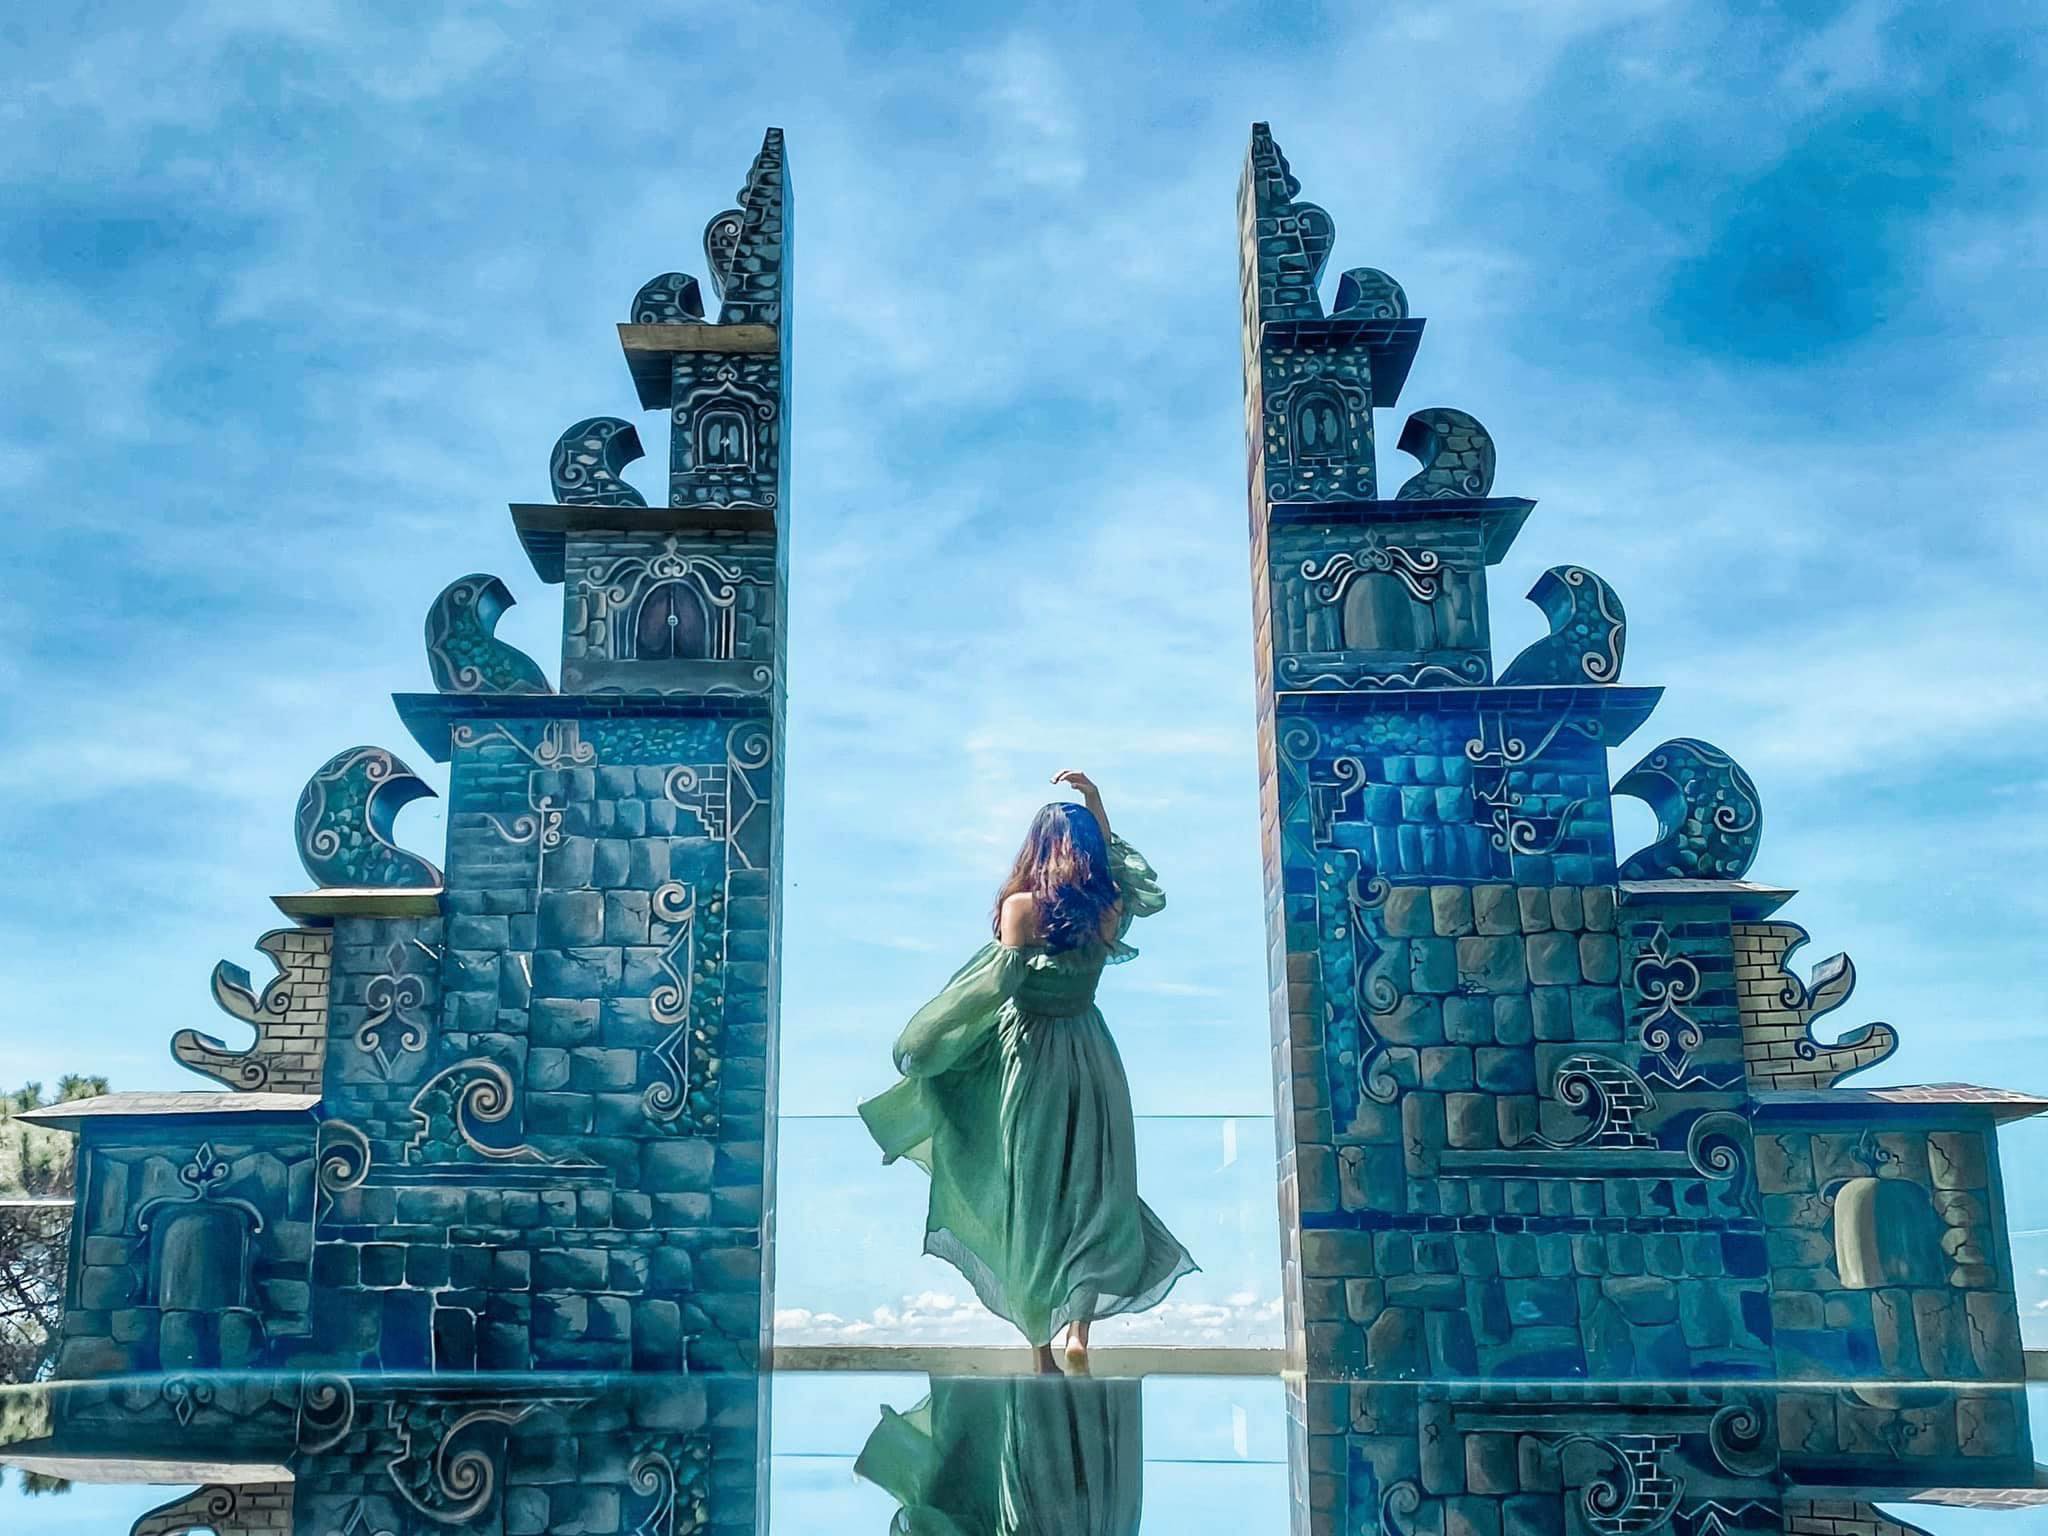 Hình ảnh cổng thiên đường tuyệt đẹp tại Việt Nam